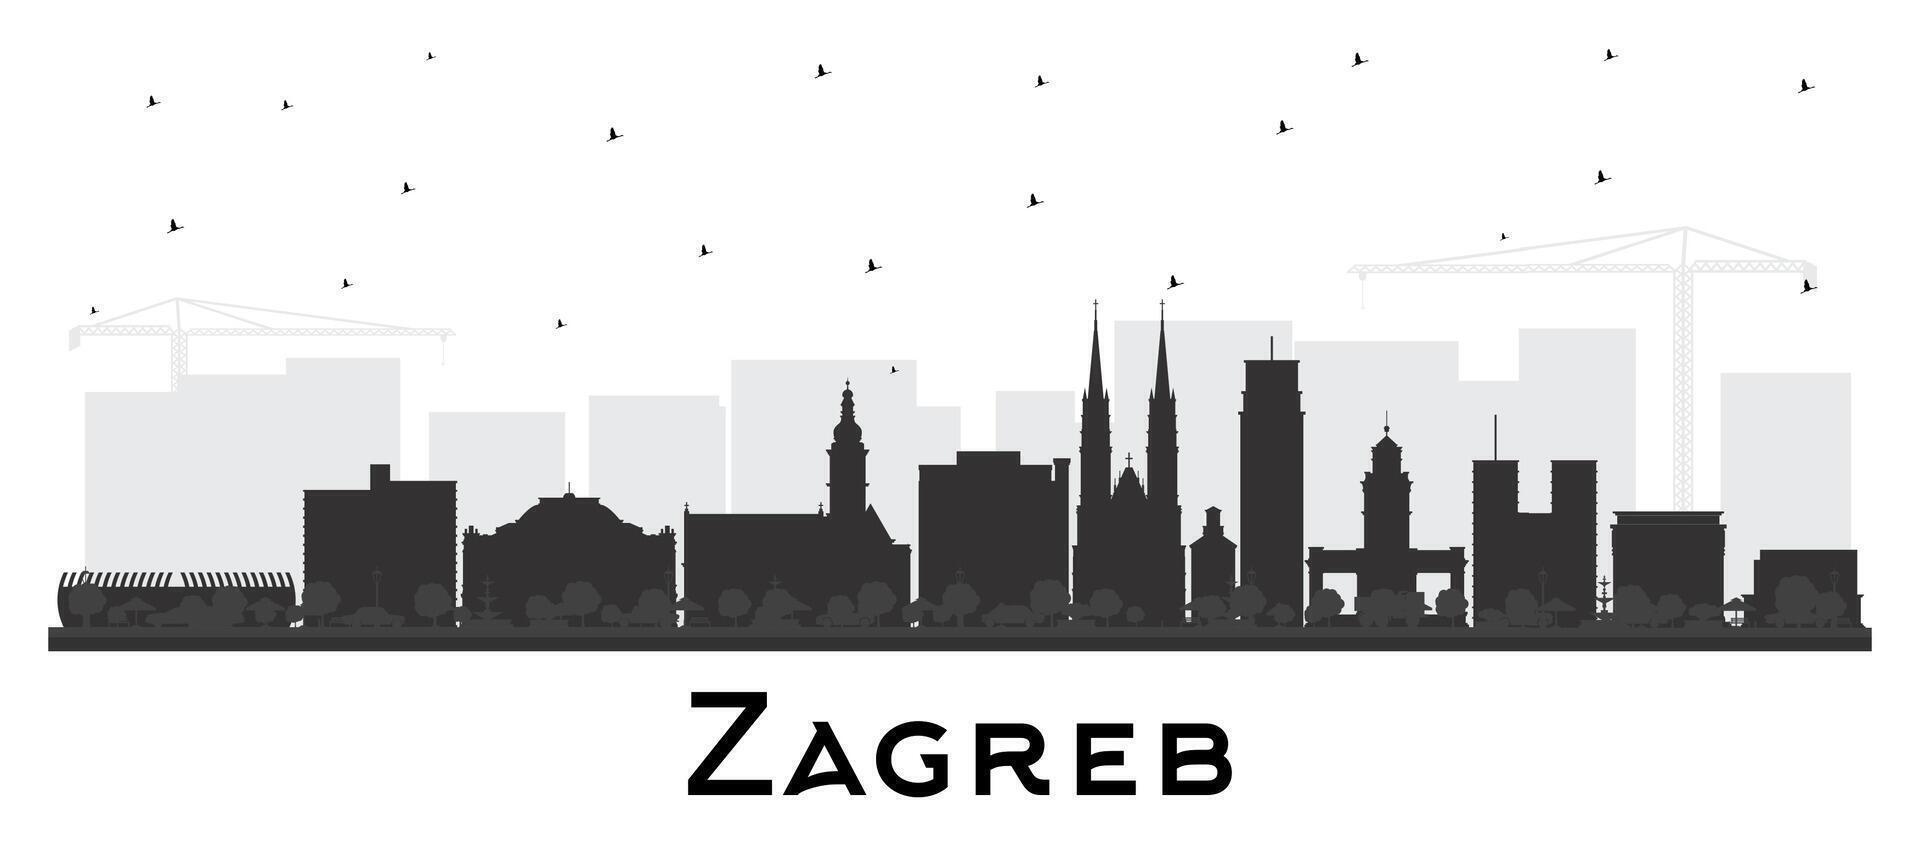 zagreb kroatien stad horisont silhuett med svart byggnader isolerat på vit. zagreb stadsbild med landmärken. företag resa och turism begrepp med historisk arkitektur. vektor